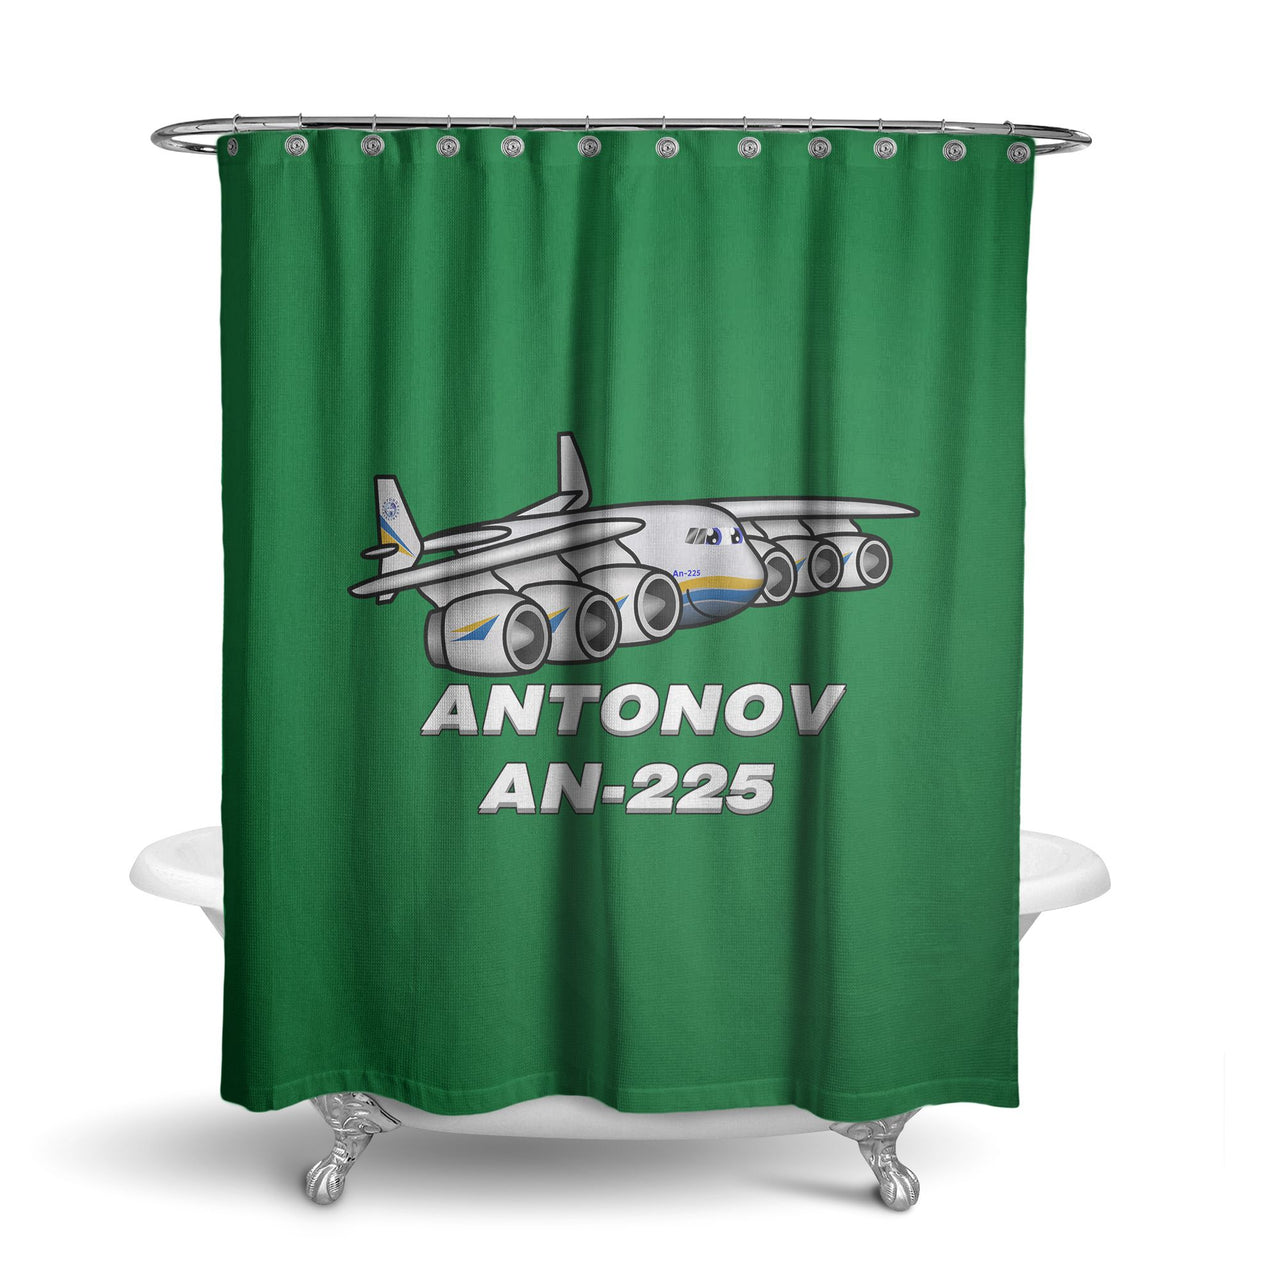 Antonov AN-225 (25) Designed Shower Curtains